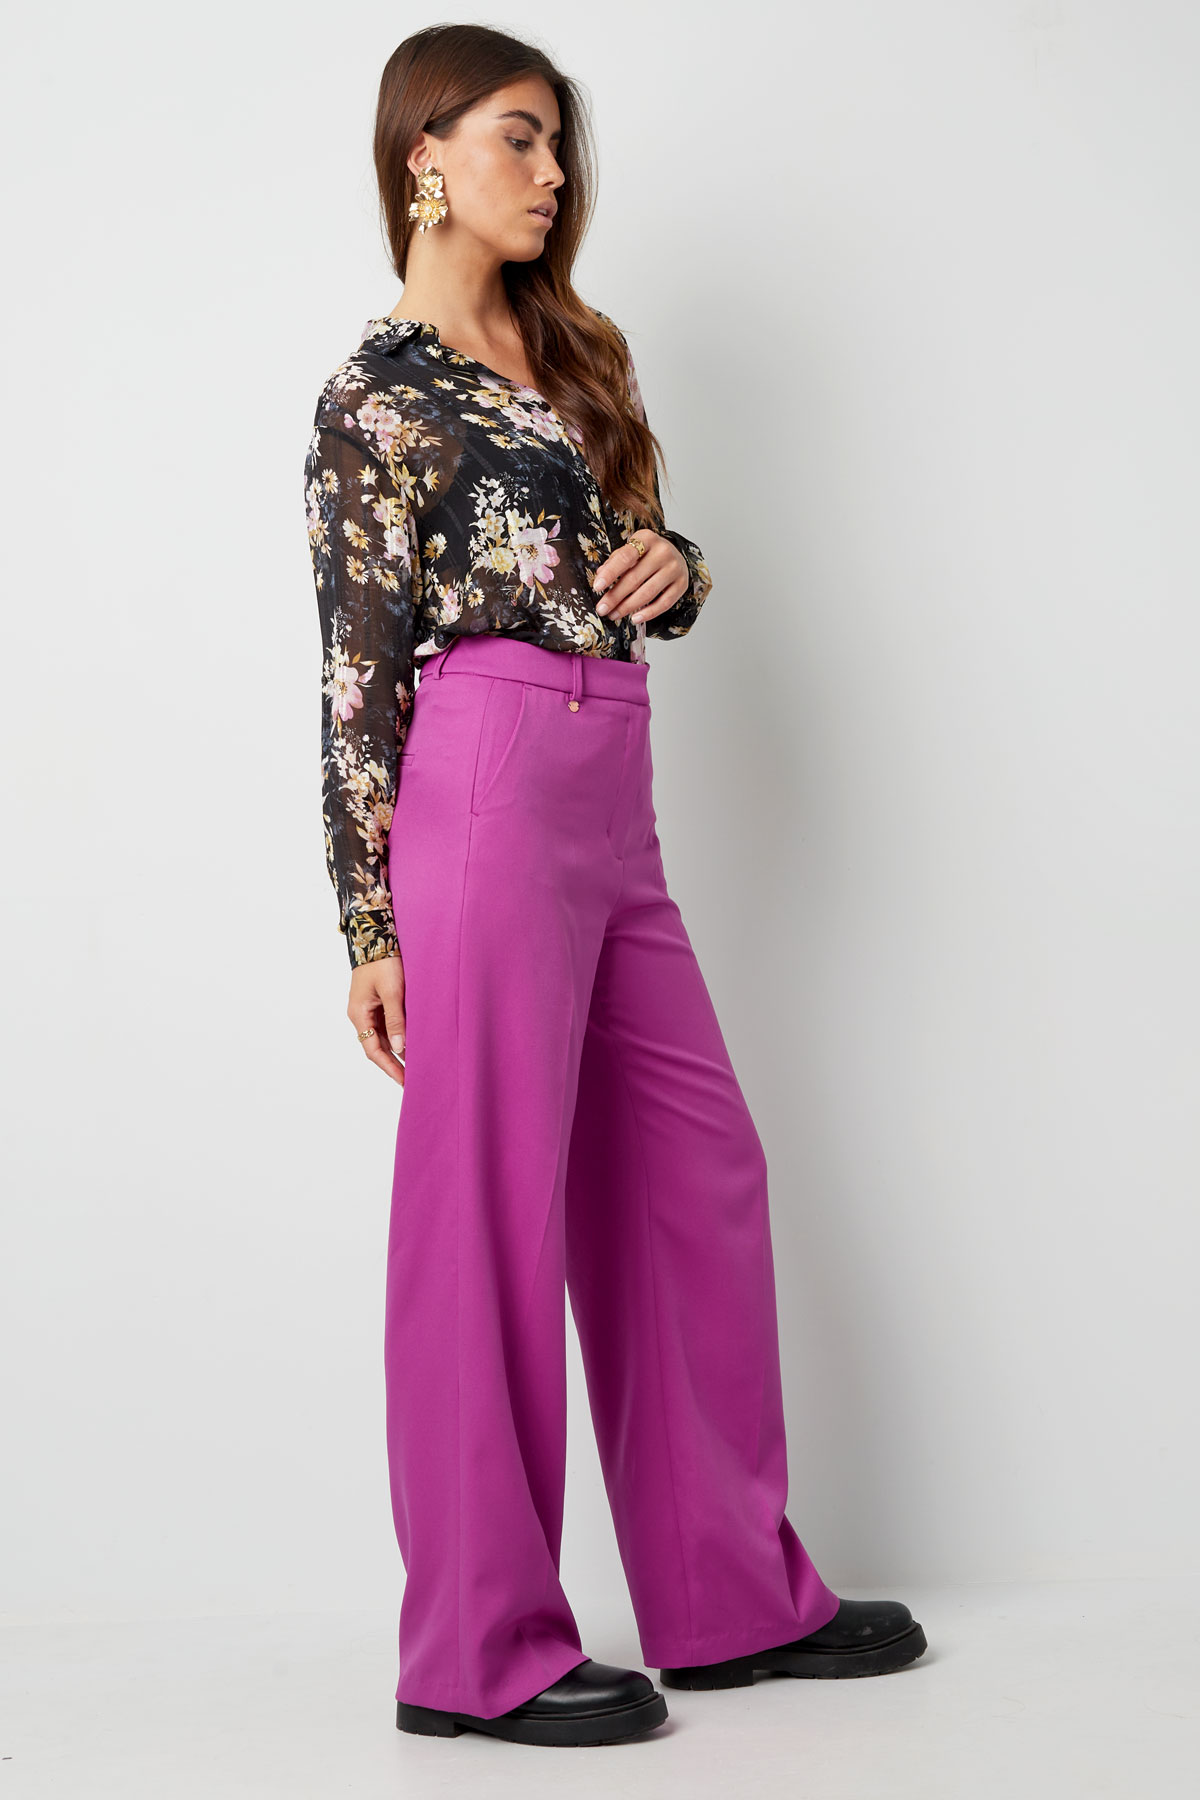 Pantalón plisado - violeta Imagen7